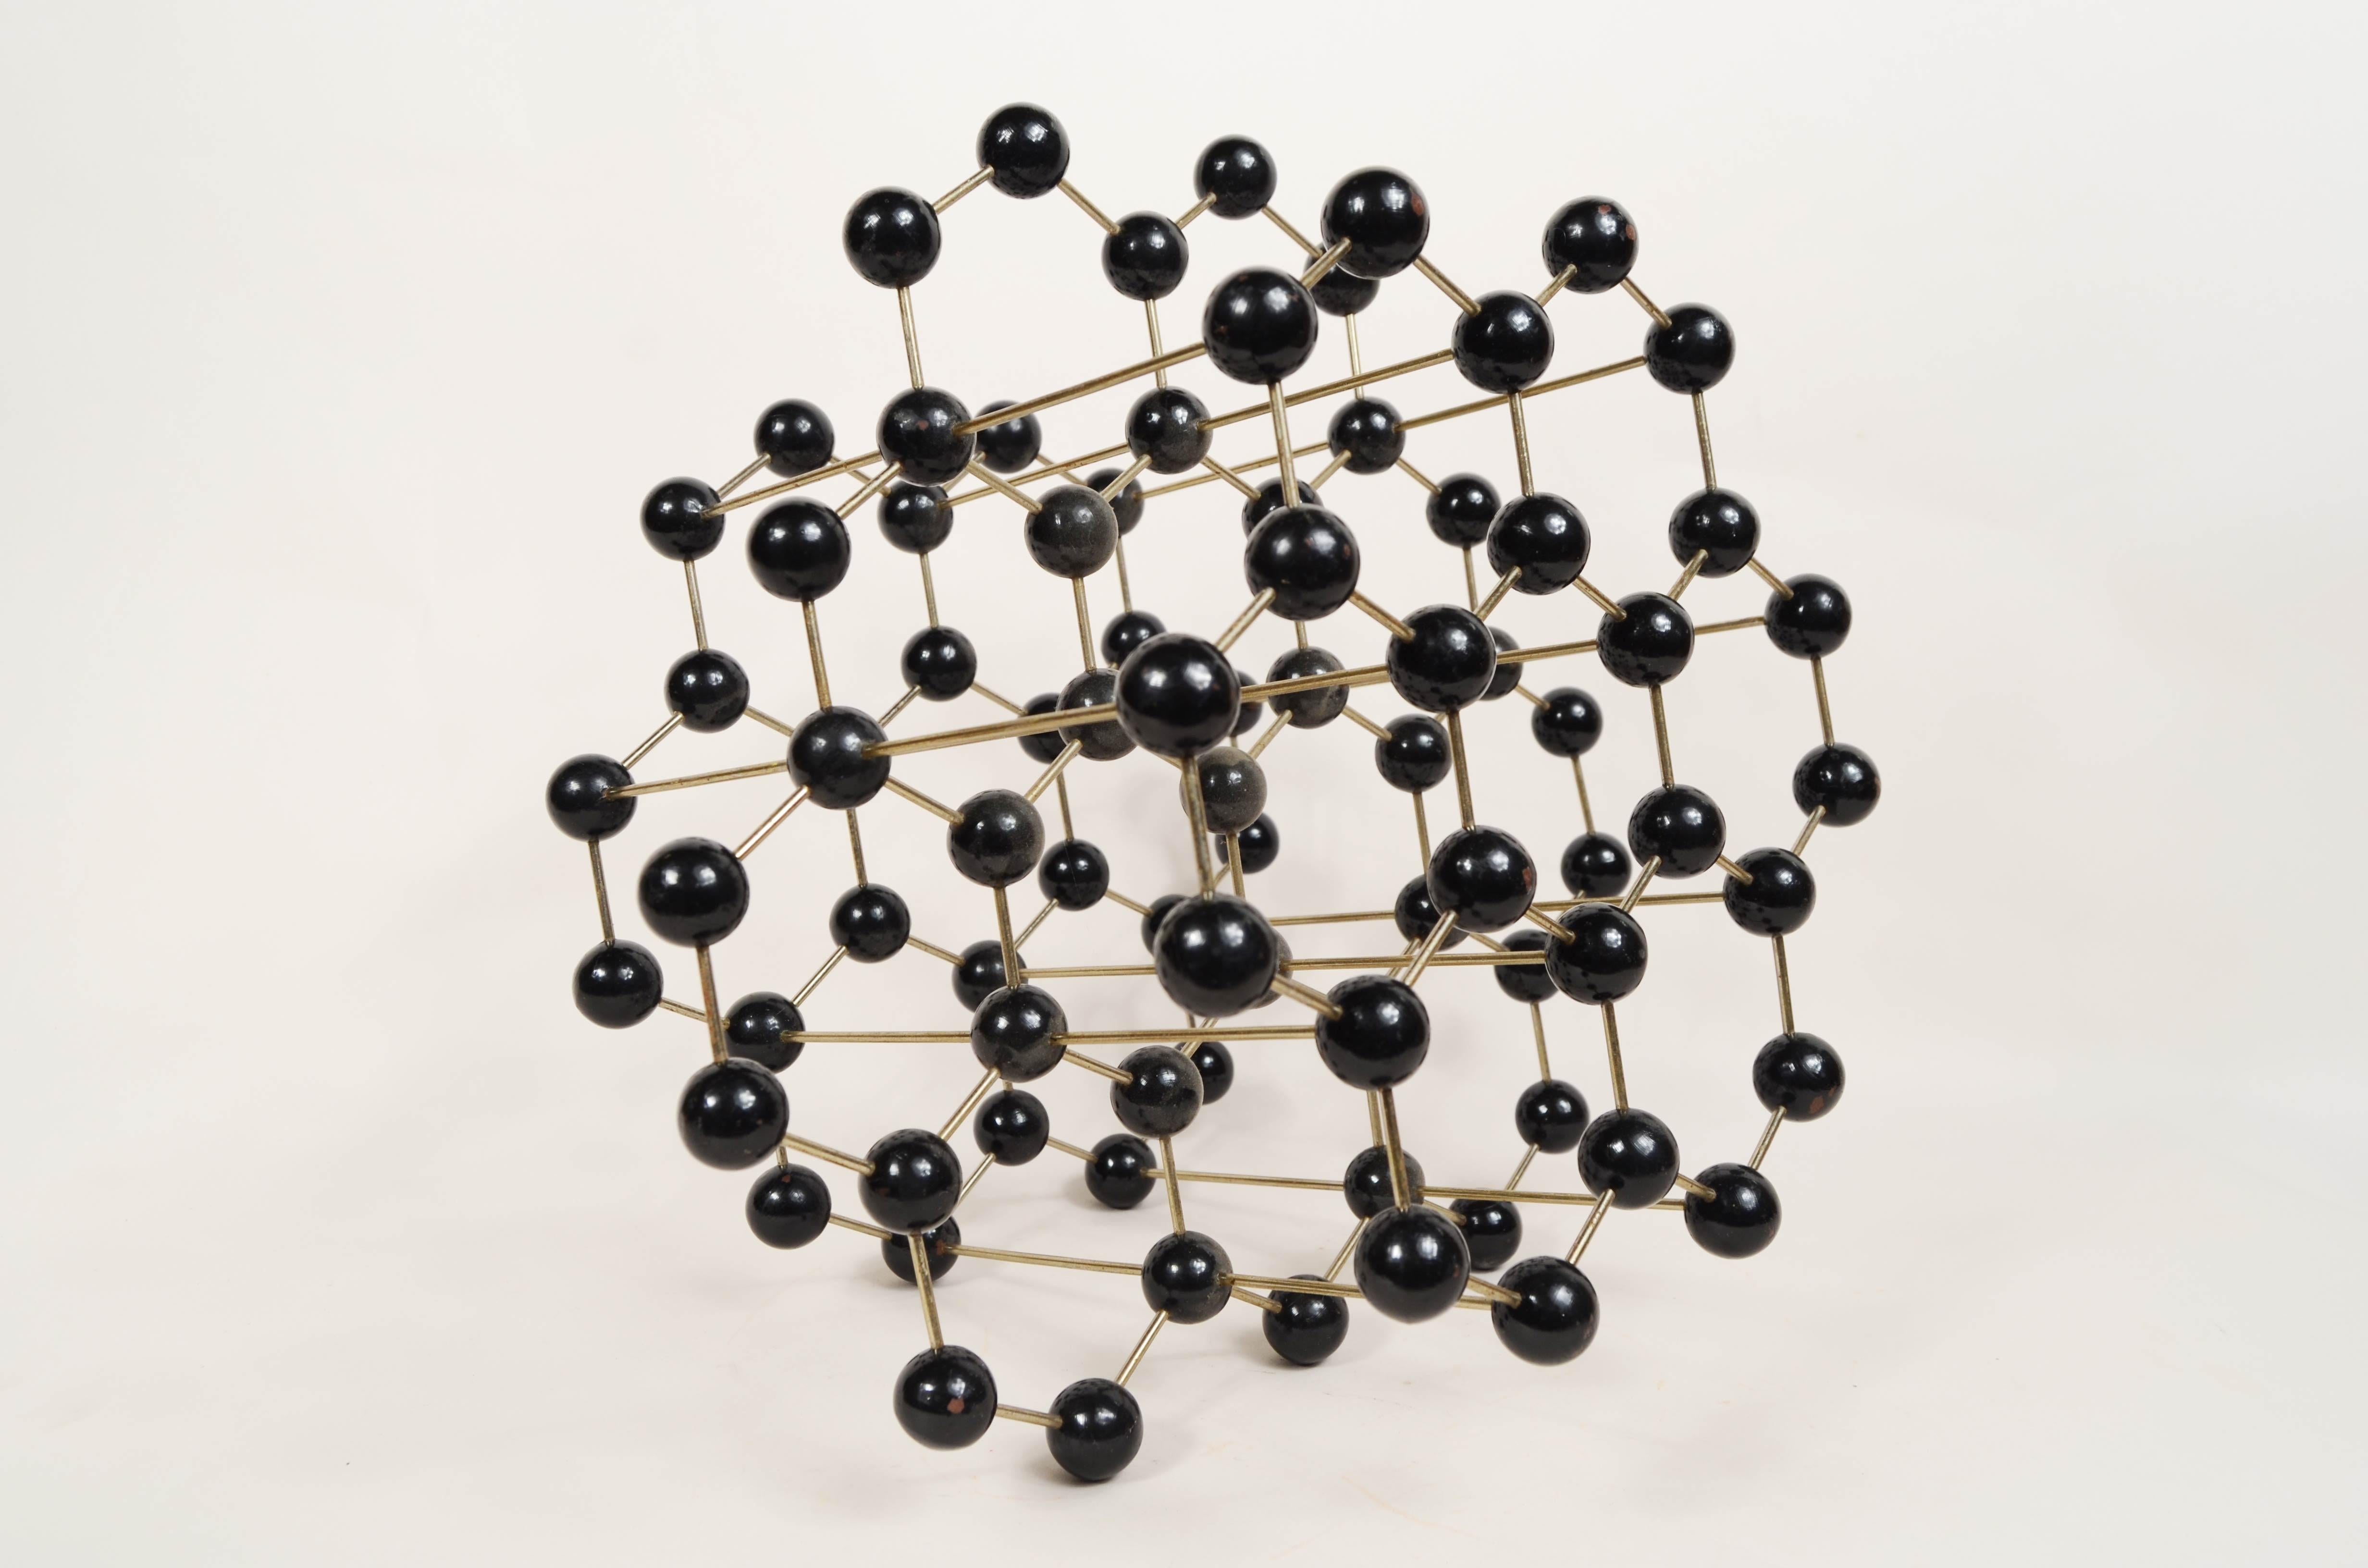 Atomare Struktur für die pädagogische Nutzung von hergestelltem Graphit  metall mit schwarzen Bakelitkugeln. Tschechoslowakische Produktion aus den 1950er Jahren. 
Gut  zustand, Abmessungen 28x28x20 cm - Zoll 11x11x7,9. 
Graphit ist ein Mineral, das